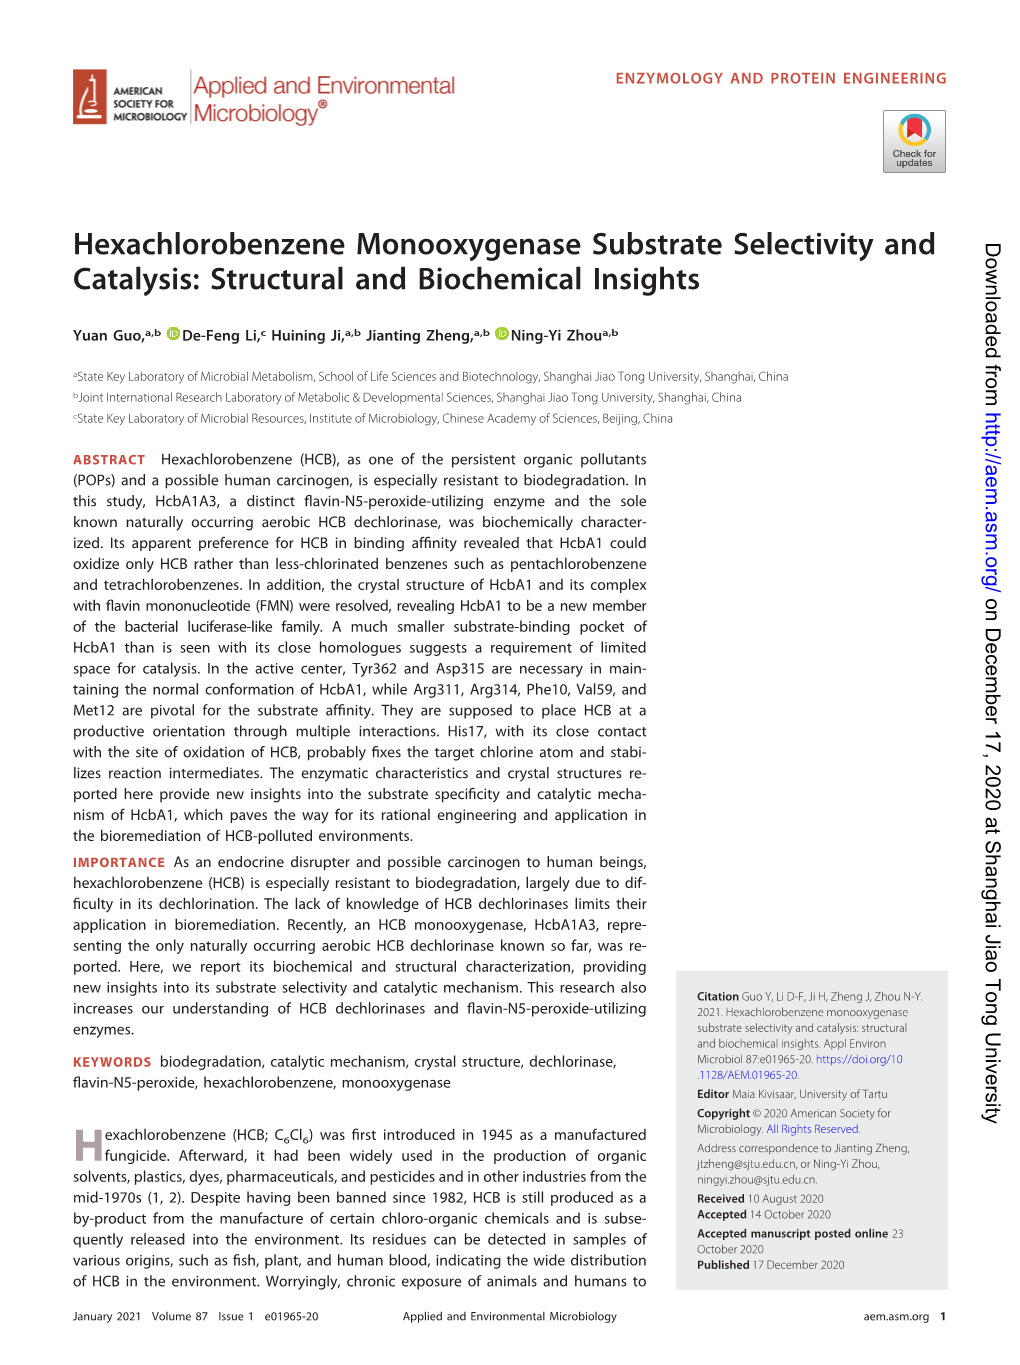 Hexachlorobenzene Monooxygenase Substrate Selectivity and Catalysis